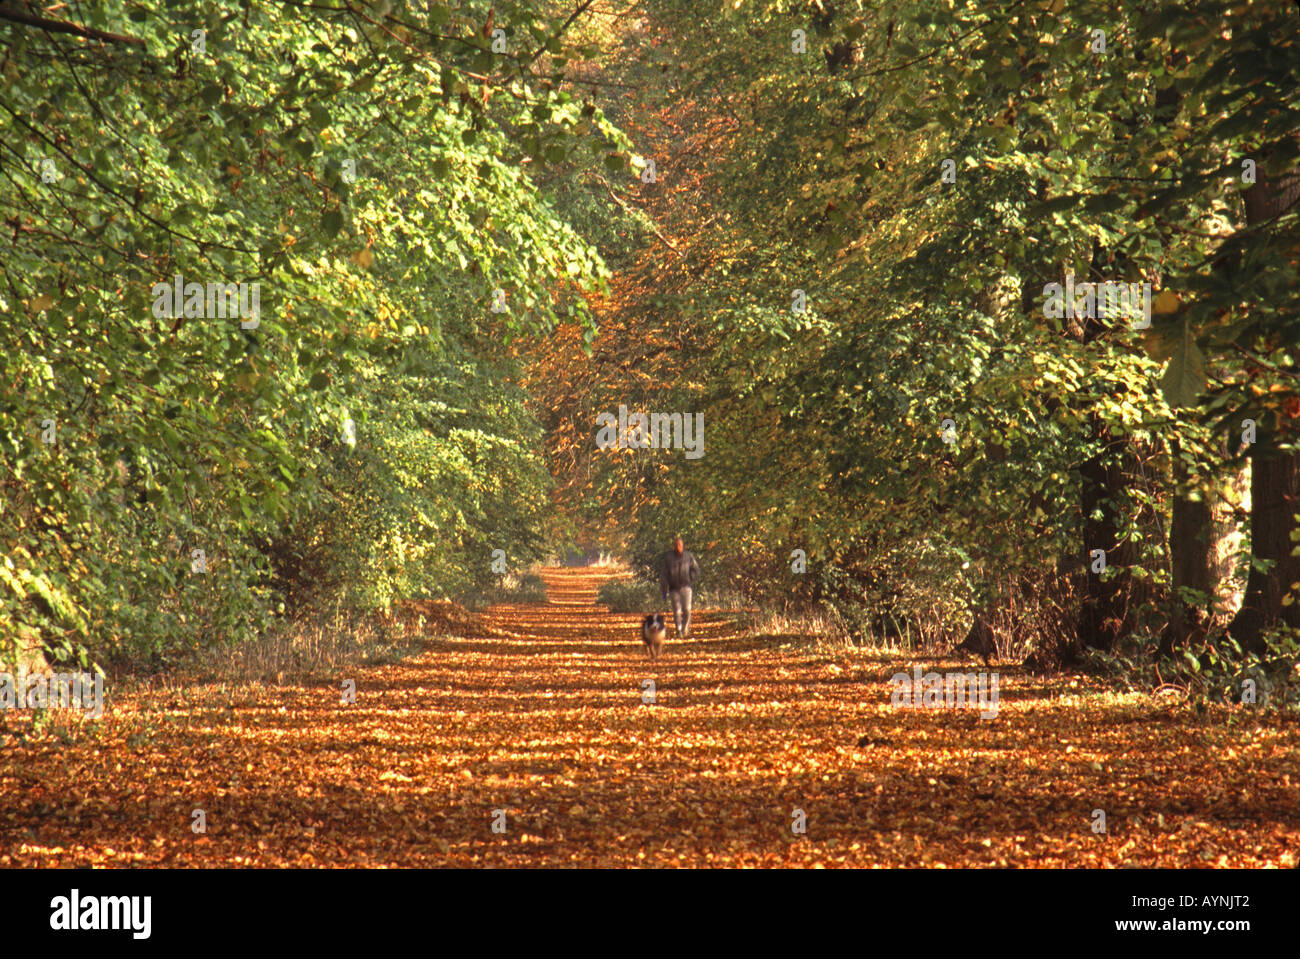 UNITED KINGDOM. À l'automne près de Shotover Wheatley dans l'Oxfordshire. Banque D'Images